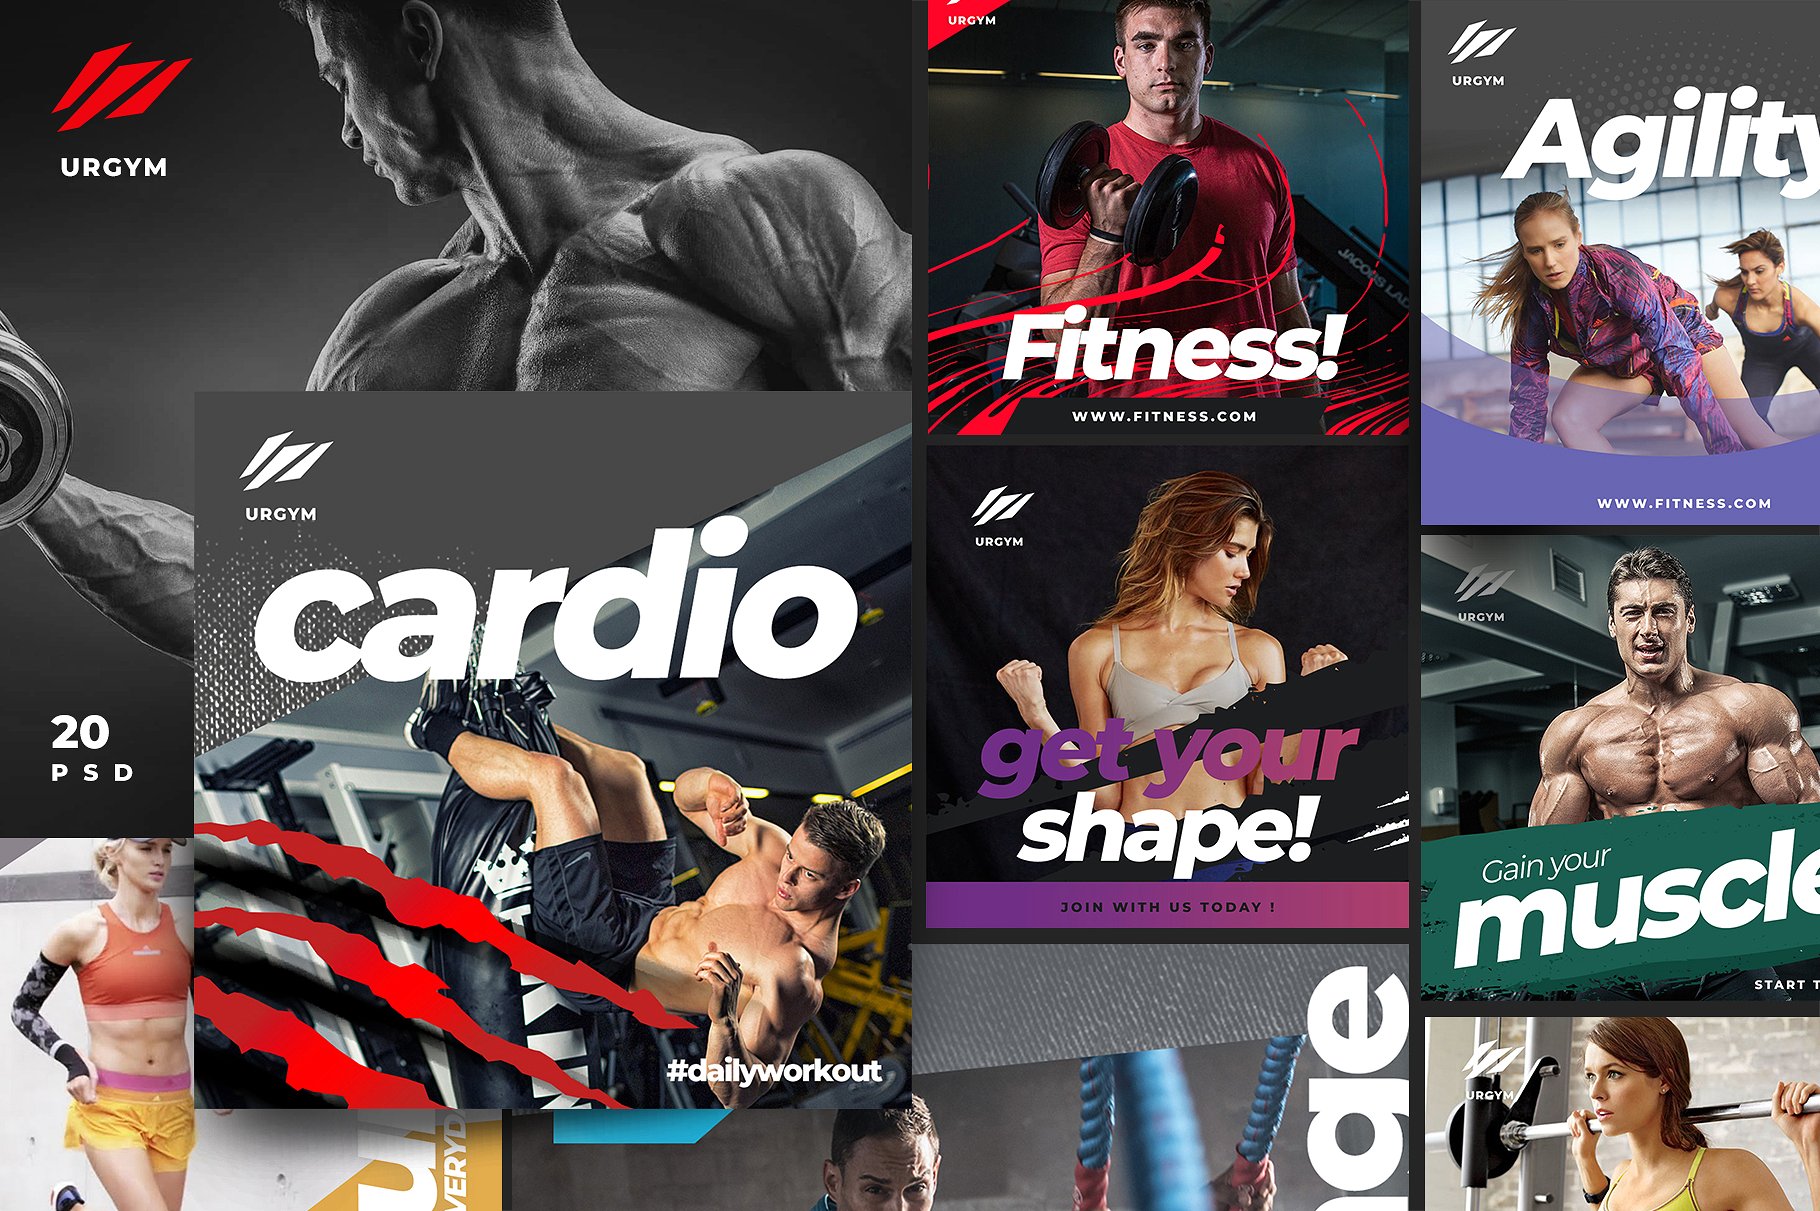 时尚健身&健身器材的instagram社交媒体模板大洋岛精选 Fitness & Gym instagram pack 2.0 [psd]插图